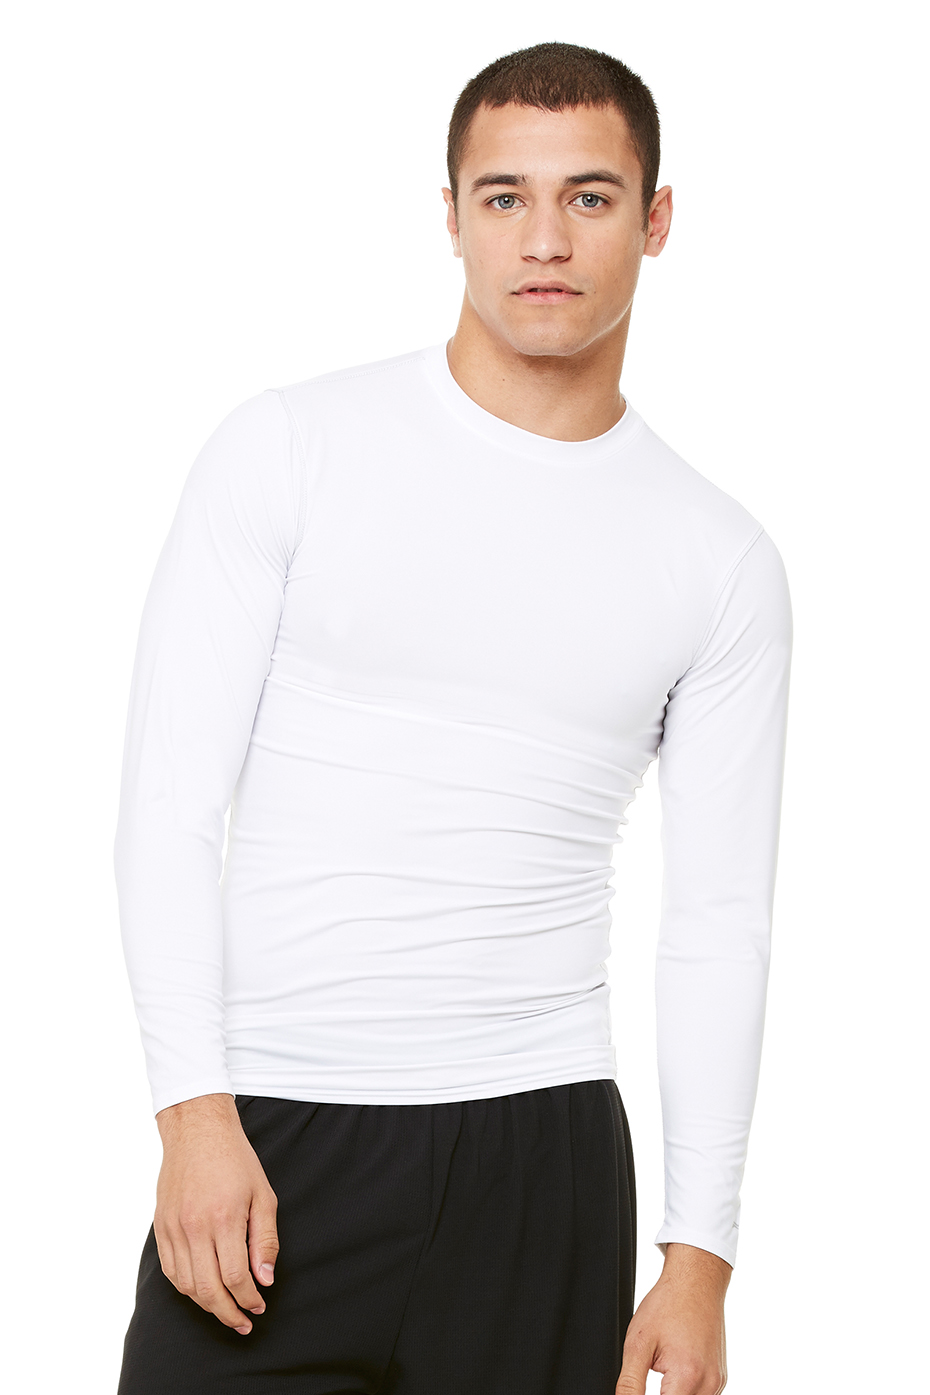 Long Sleeve Shirts and Sport Shorts Milin Naco 3 Pcs Mens Workout ...